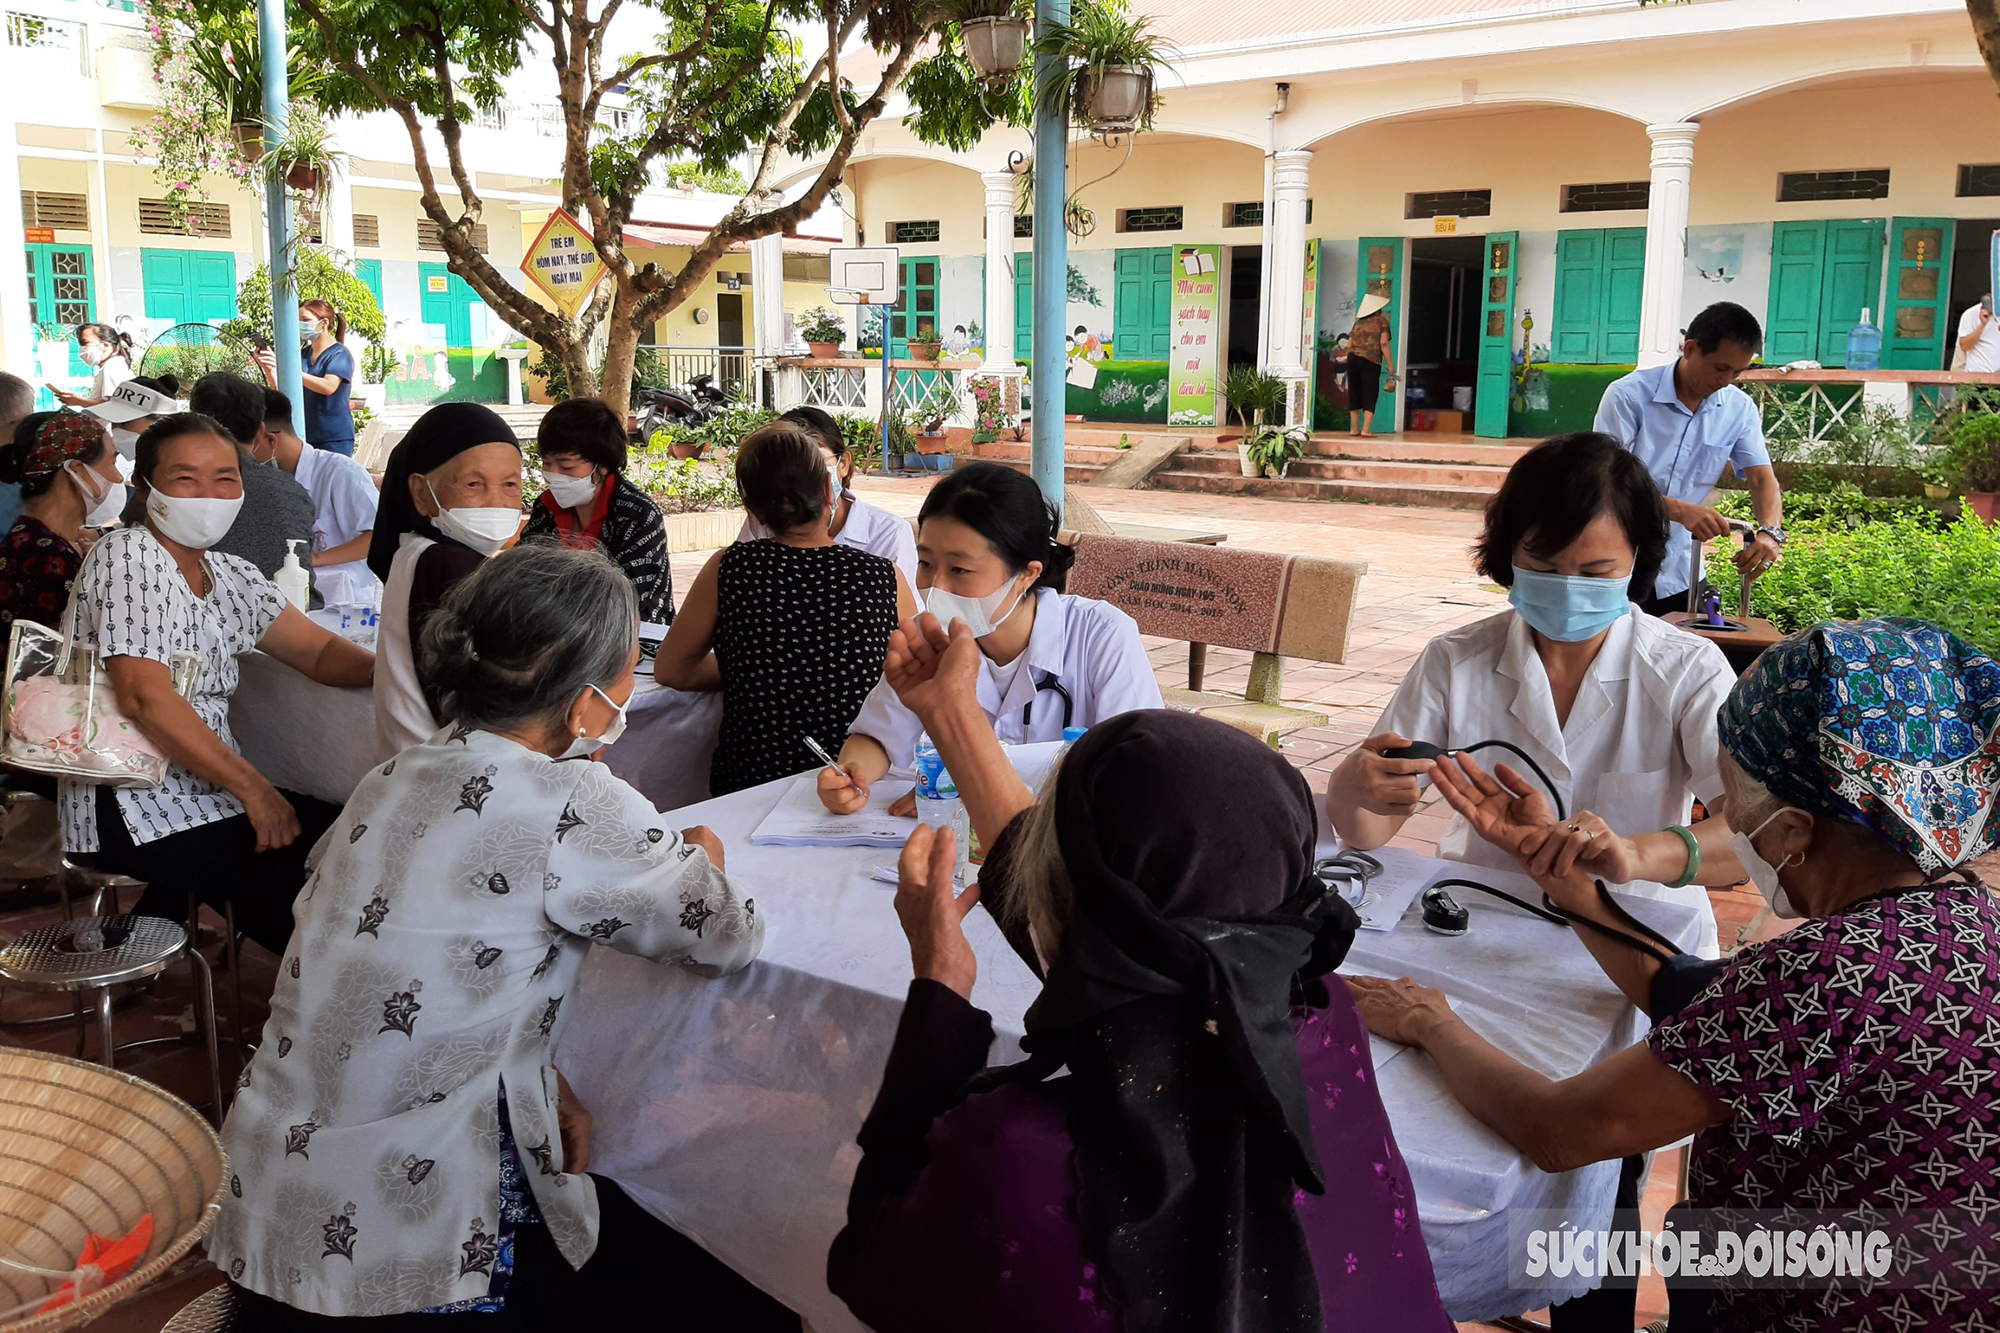  Đến với chương trình 'Khám bệnh, tư vấn sức khỏe và phát thuốc miễn phí', người dân xã Tân Sỏi được các bác sĩ cùng các thành viên trong đoàn khám các chuyên khoa lâm sàng và cận lâm sàng.